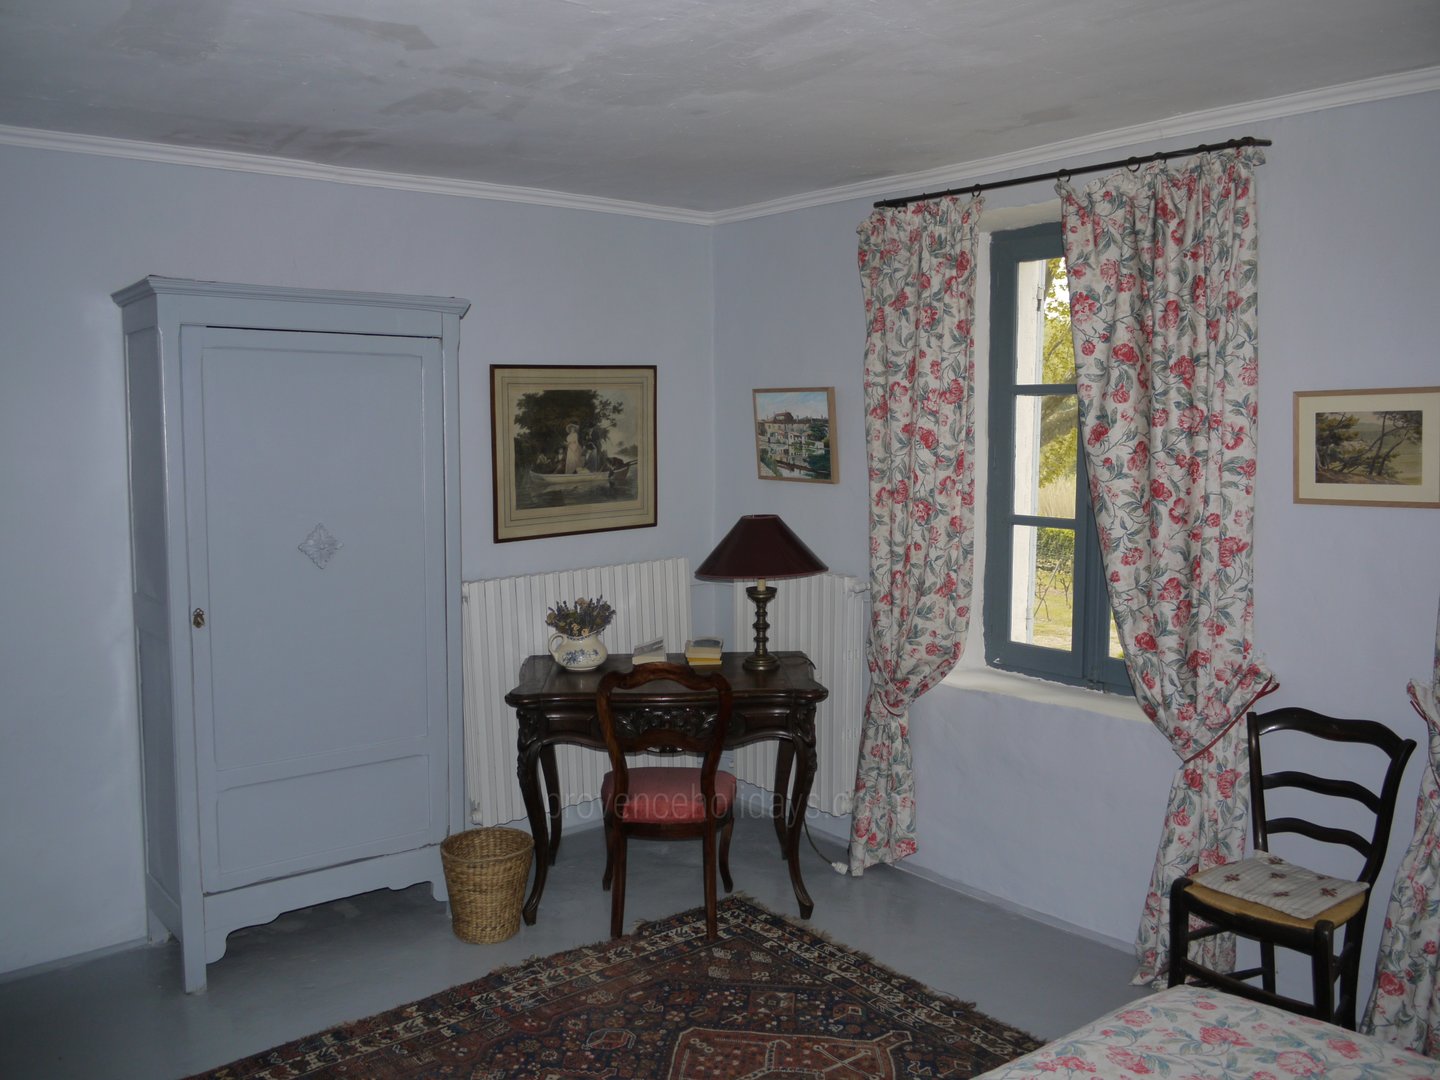 66 - Chez Martine: Villa: Interior